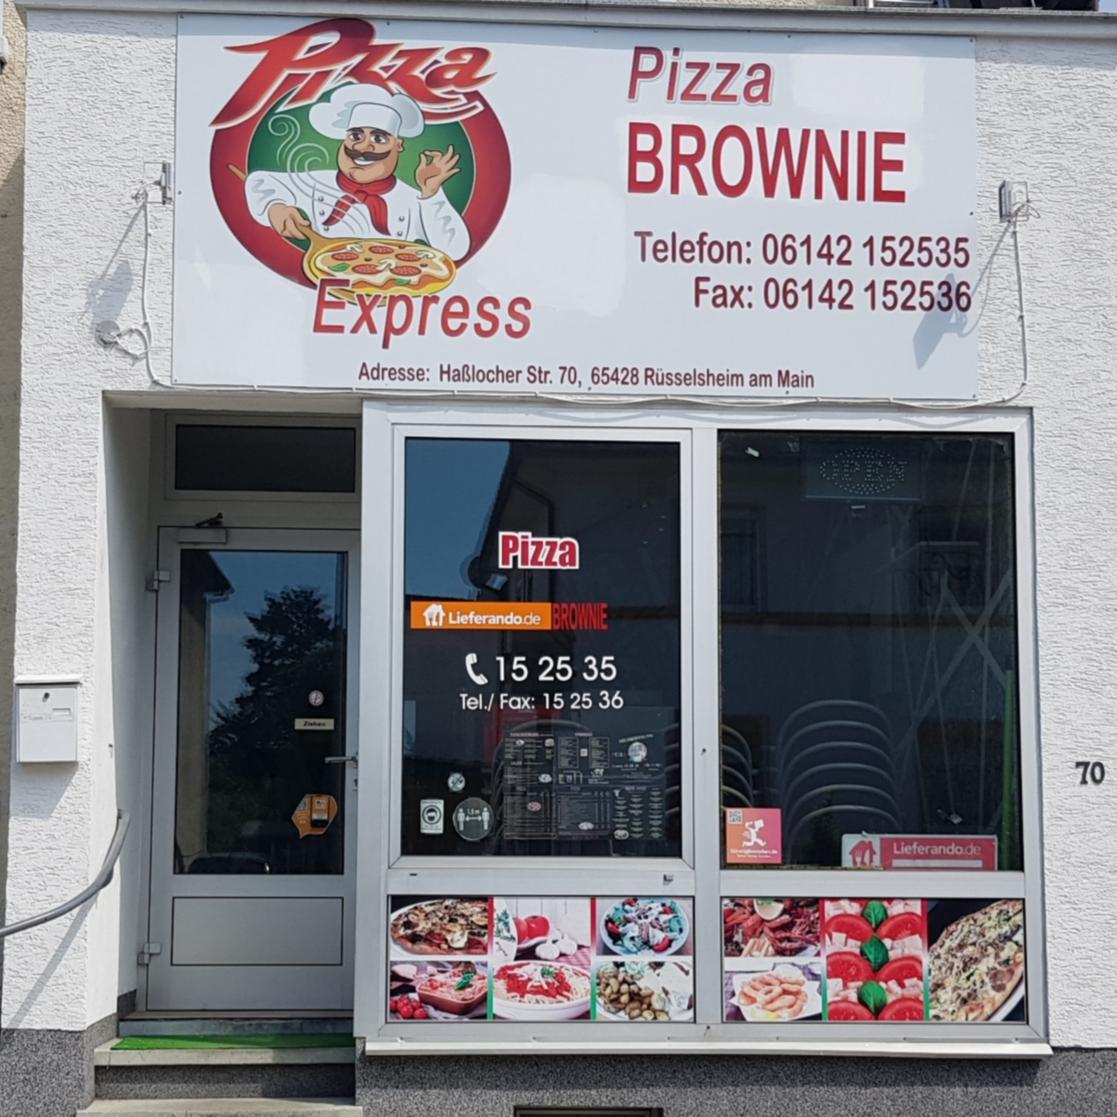 Restaurant "Pizza Brownie" in Rüsselsheim am Main